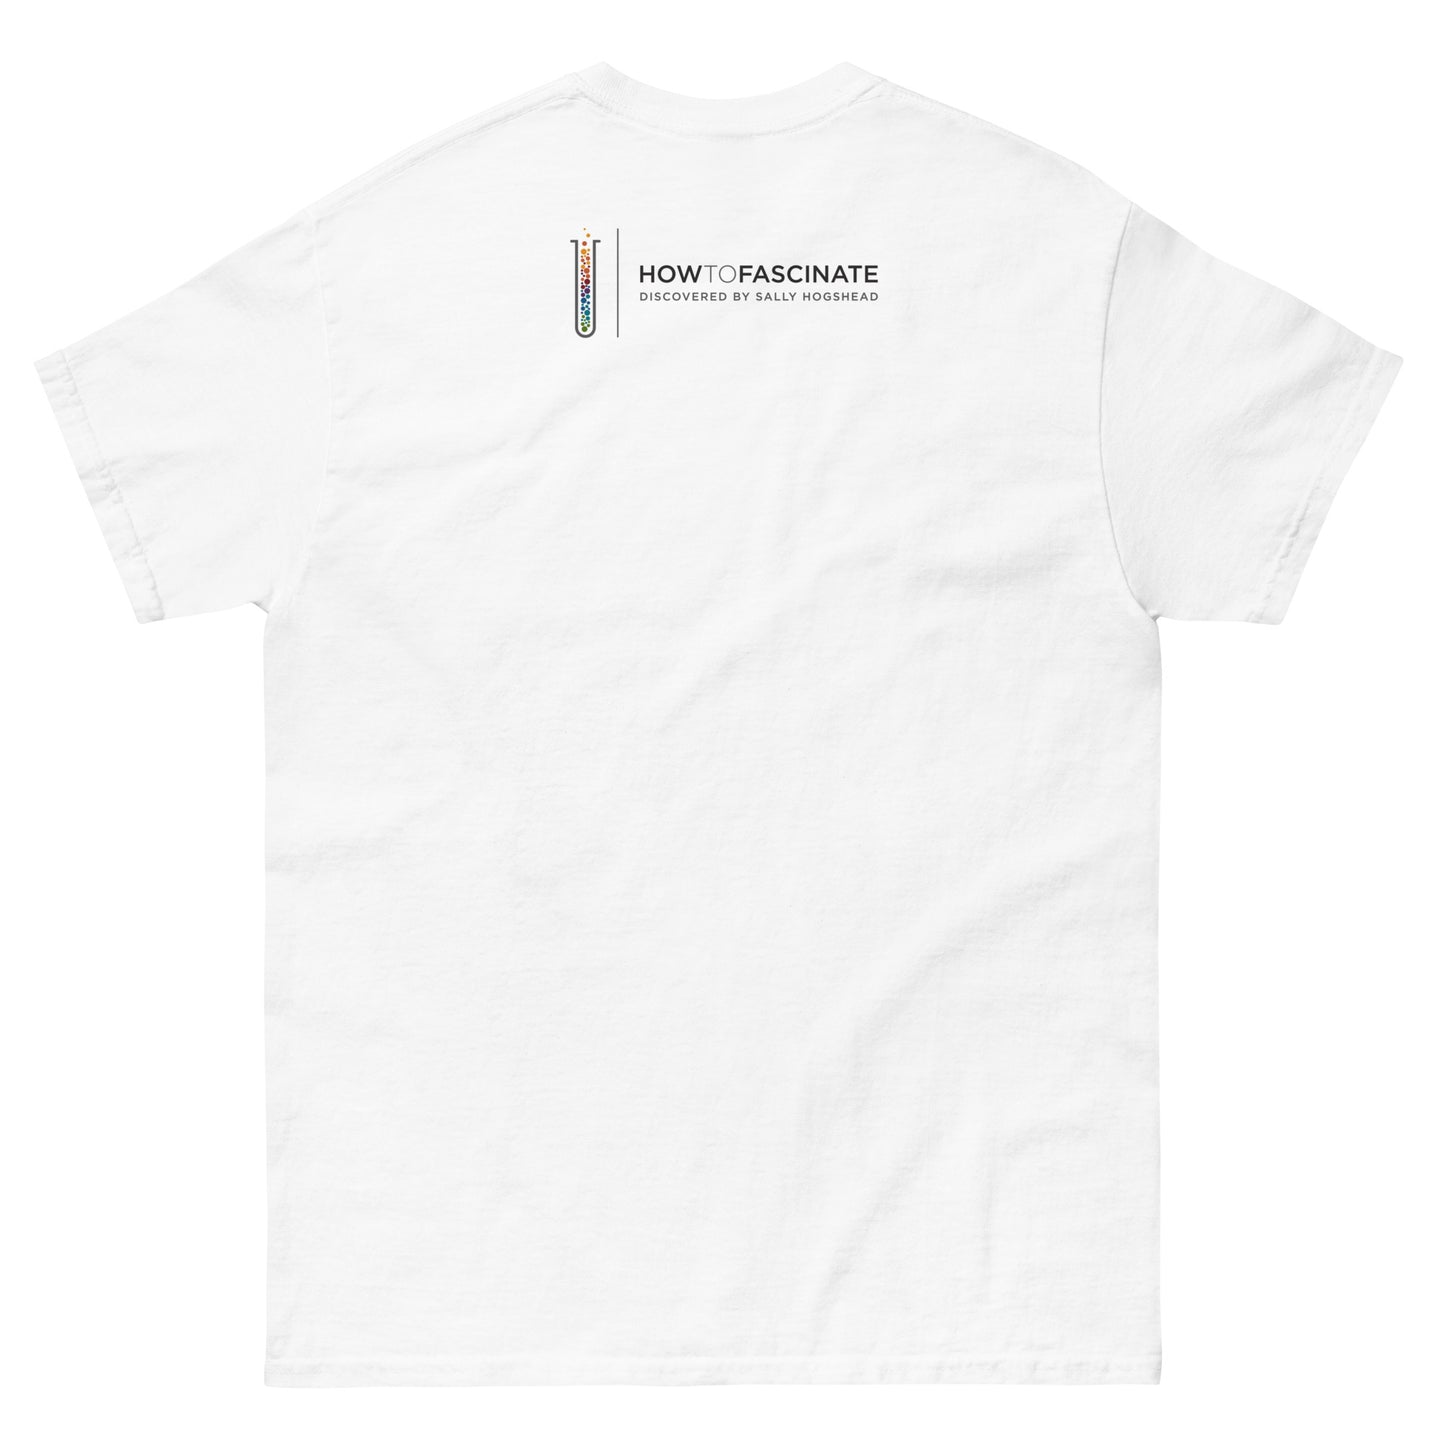 The Provocateur - Men's Archetype short sleeve t-shirt